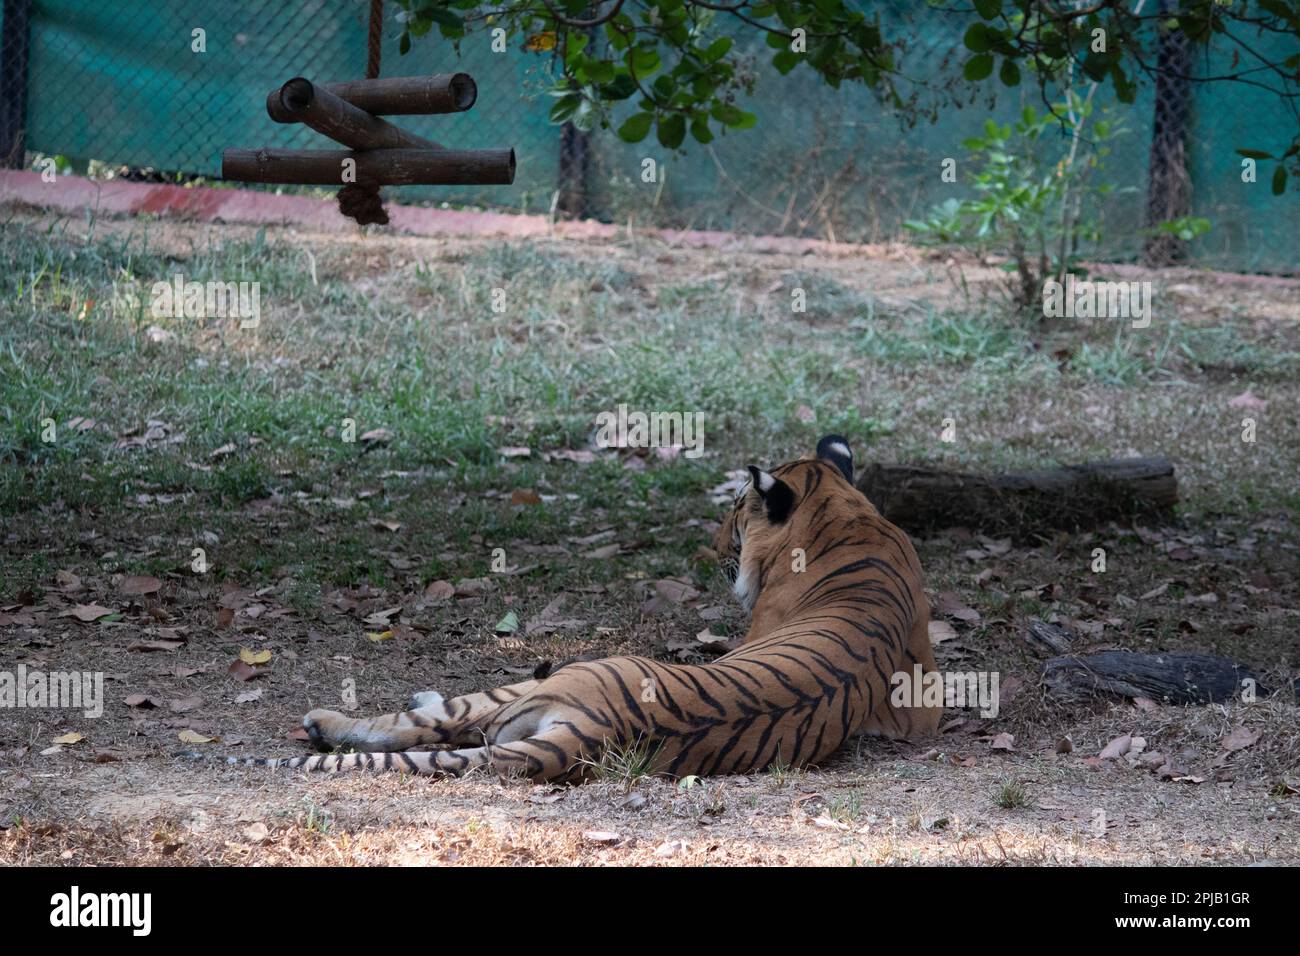 Tigre au parc national de Bannerghatta Bangalore debout dans le zoo. Refuges de la faune sauvage de la forêt à Karnataka Inde Banque D'Images